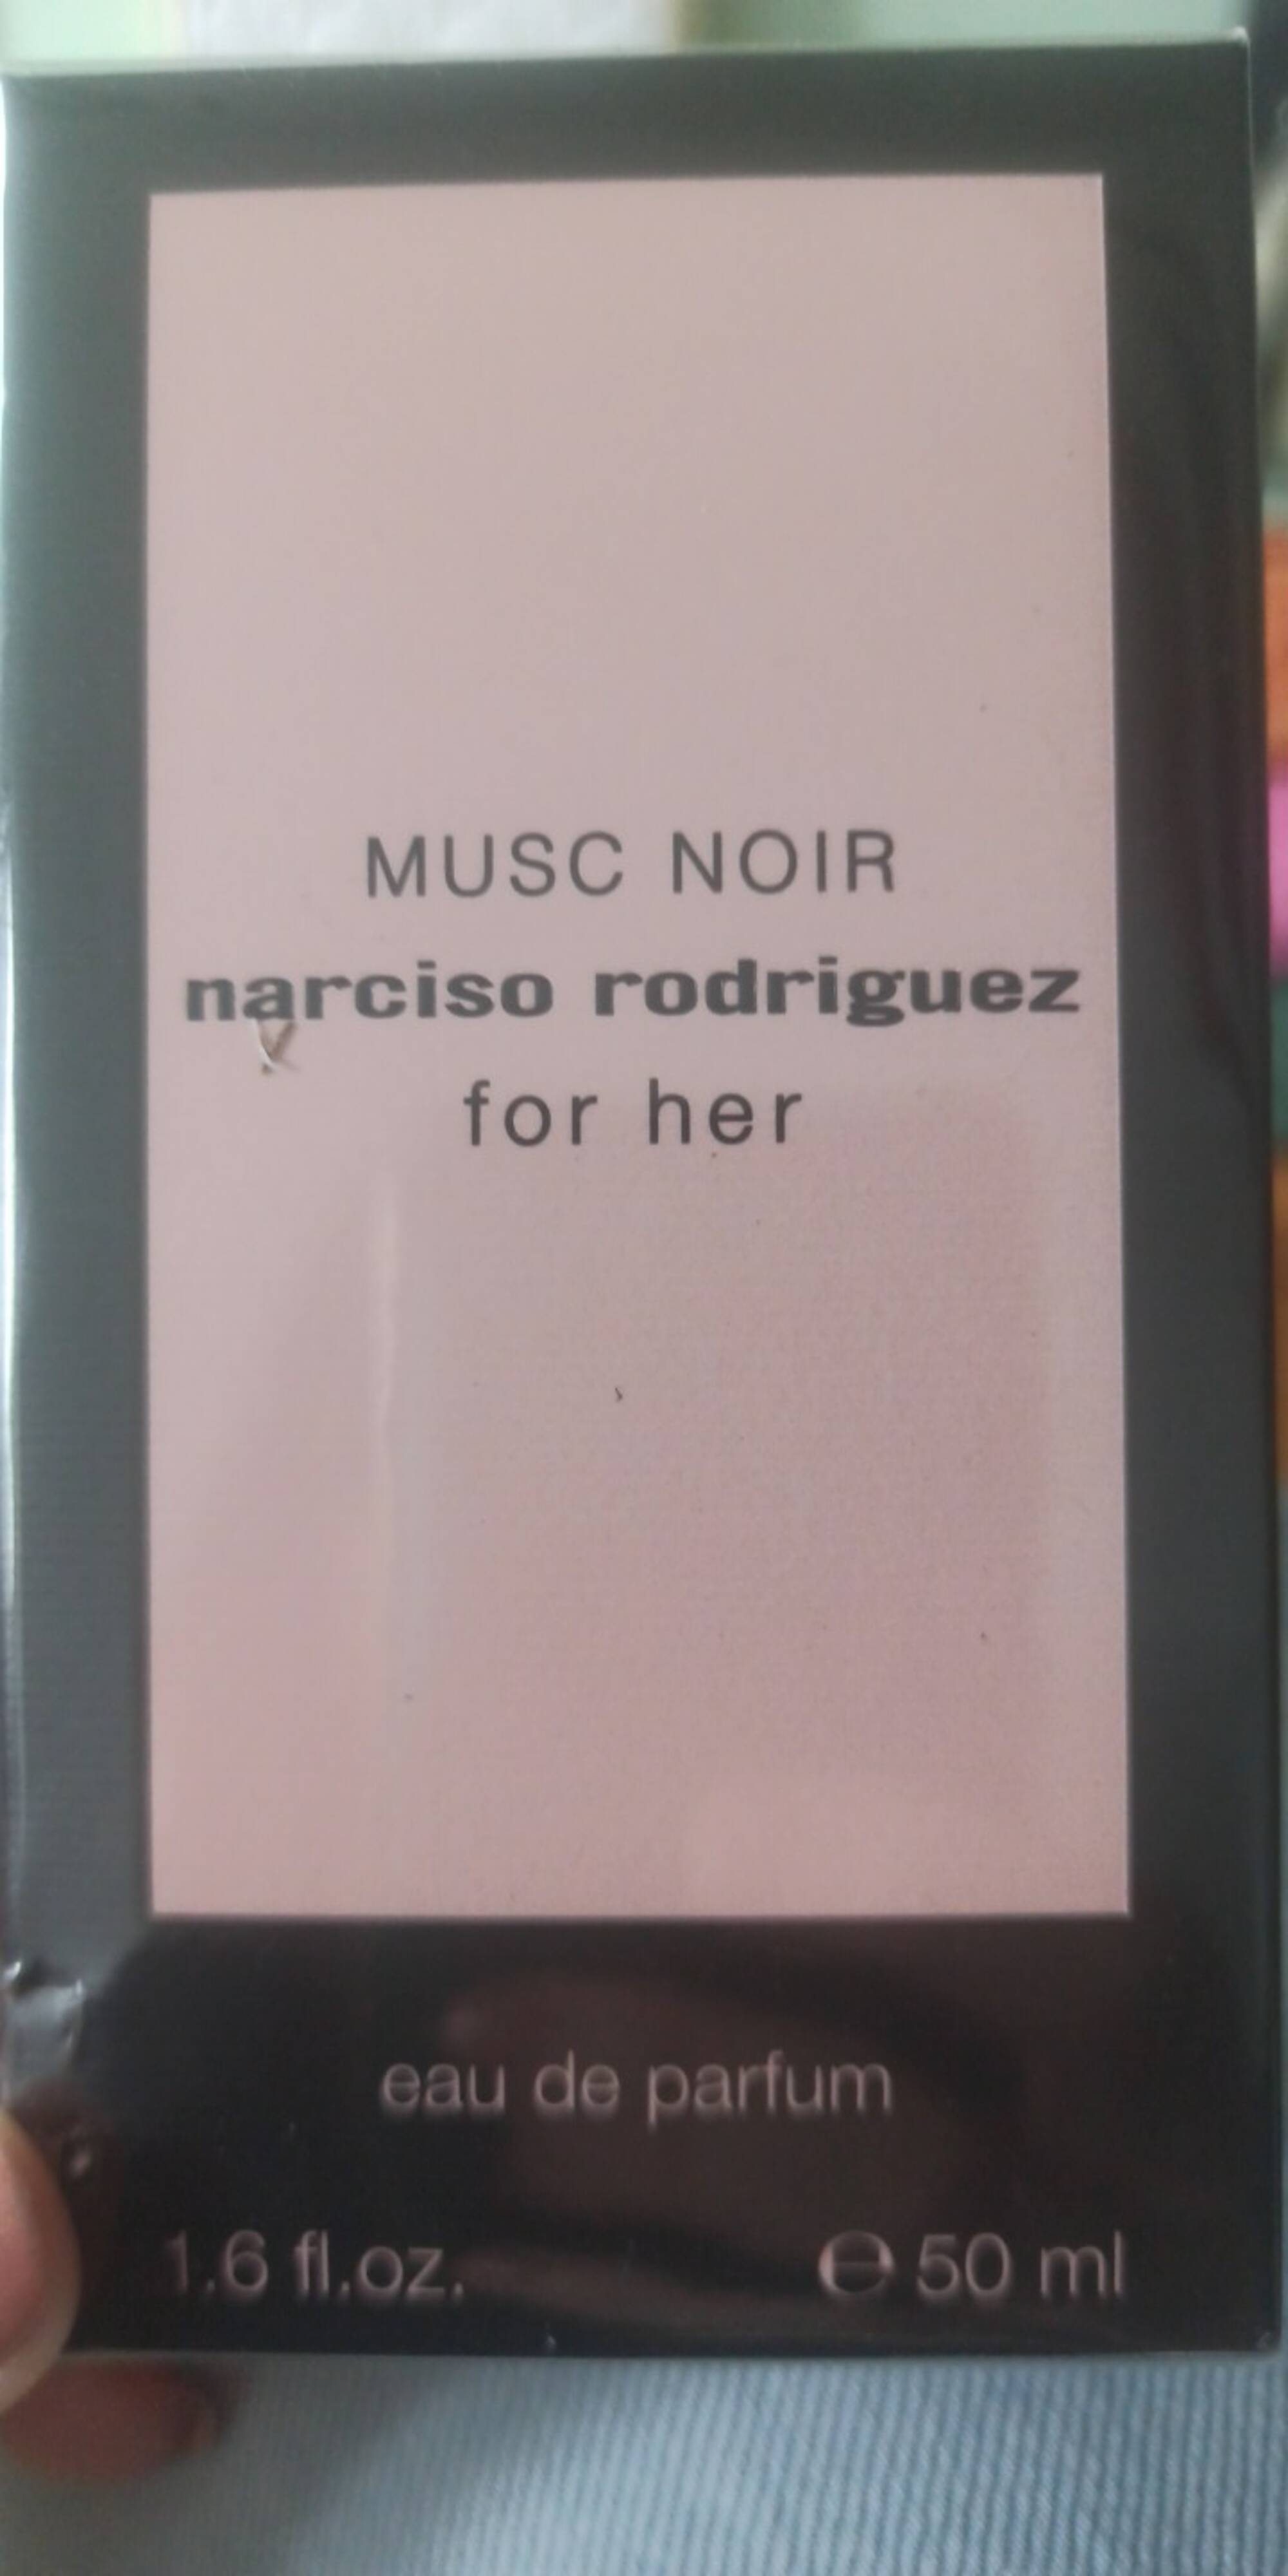 NARCISO RODRIGUEZ - Musc noir - Eau de parfum